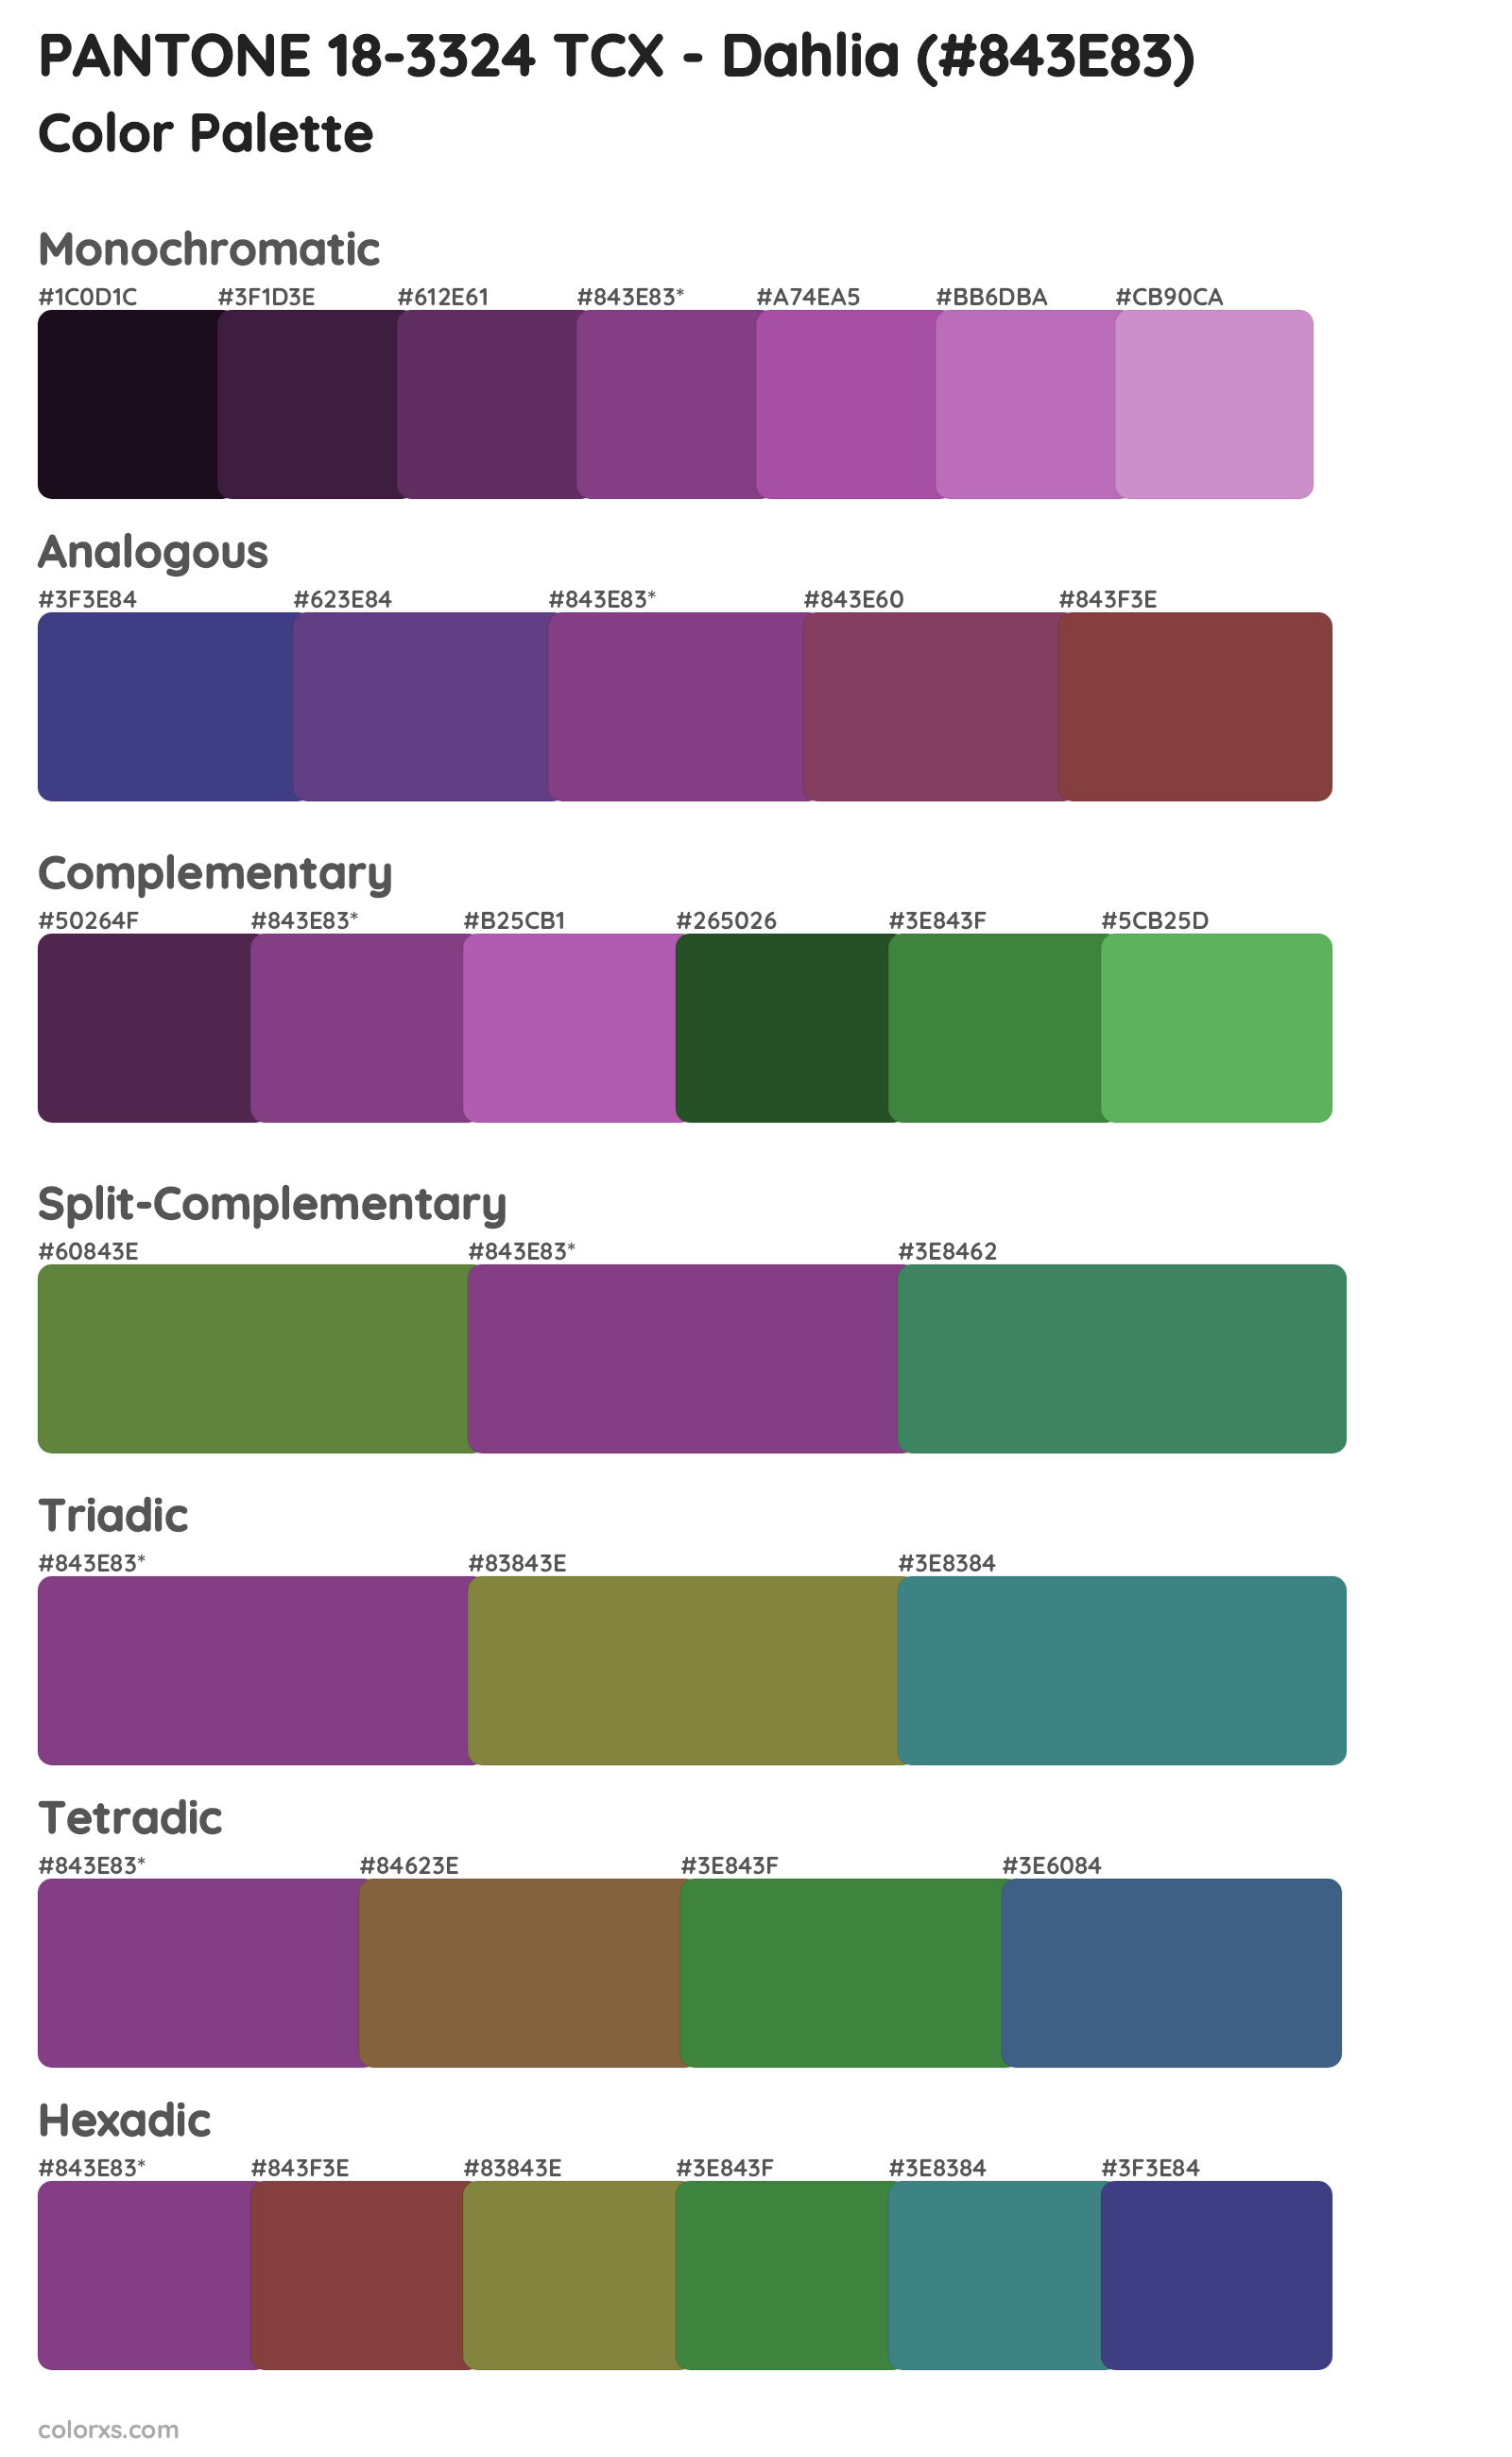 PANTONE 18-3324 TCX - Dahlia Color Scheme Palettes